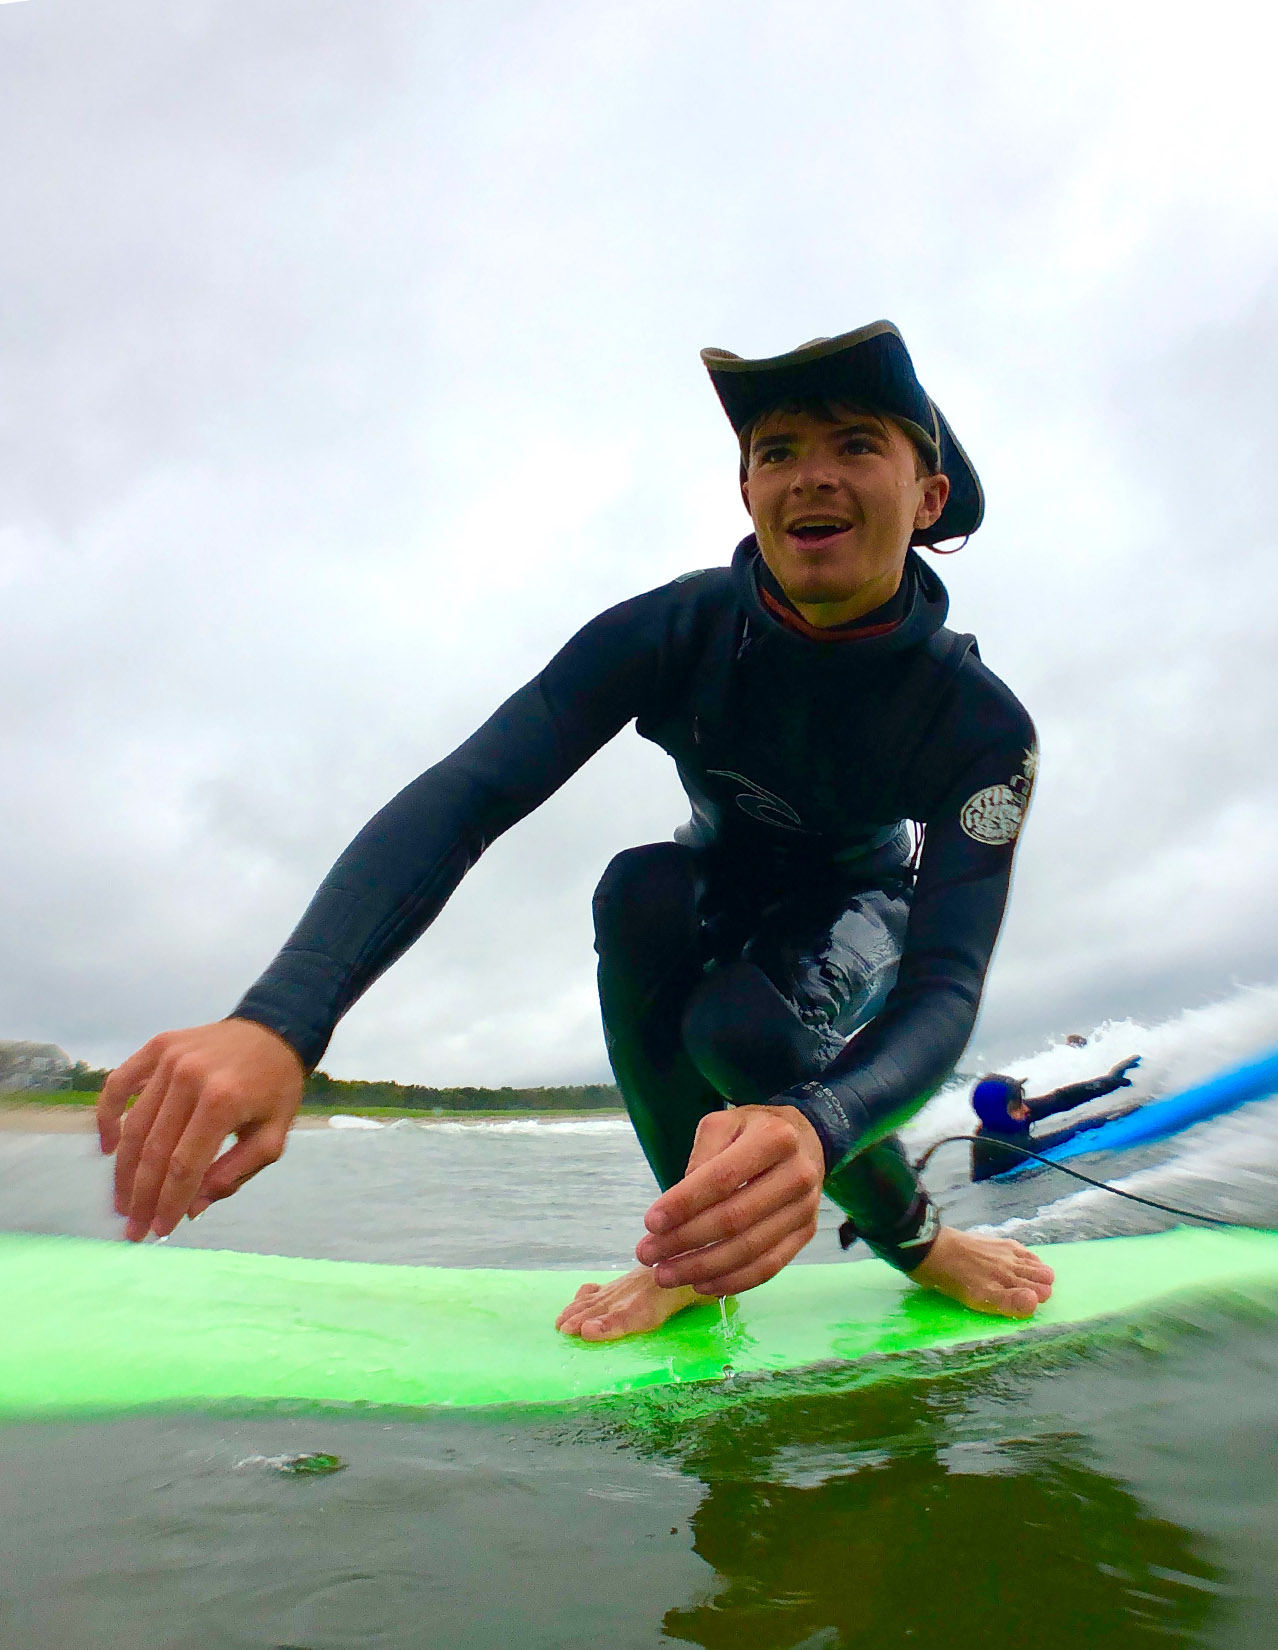 Luke Grover of Surf Camp